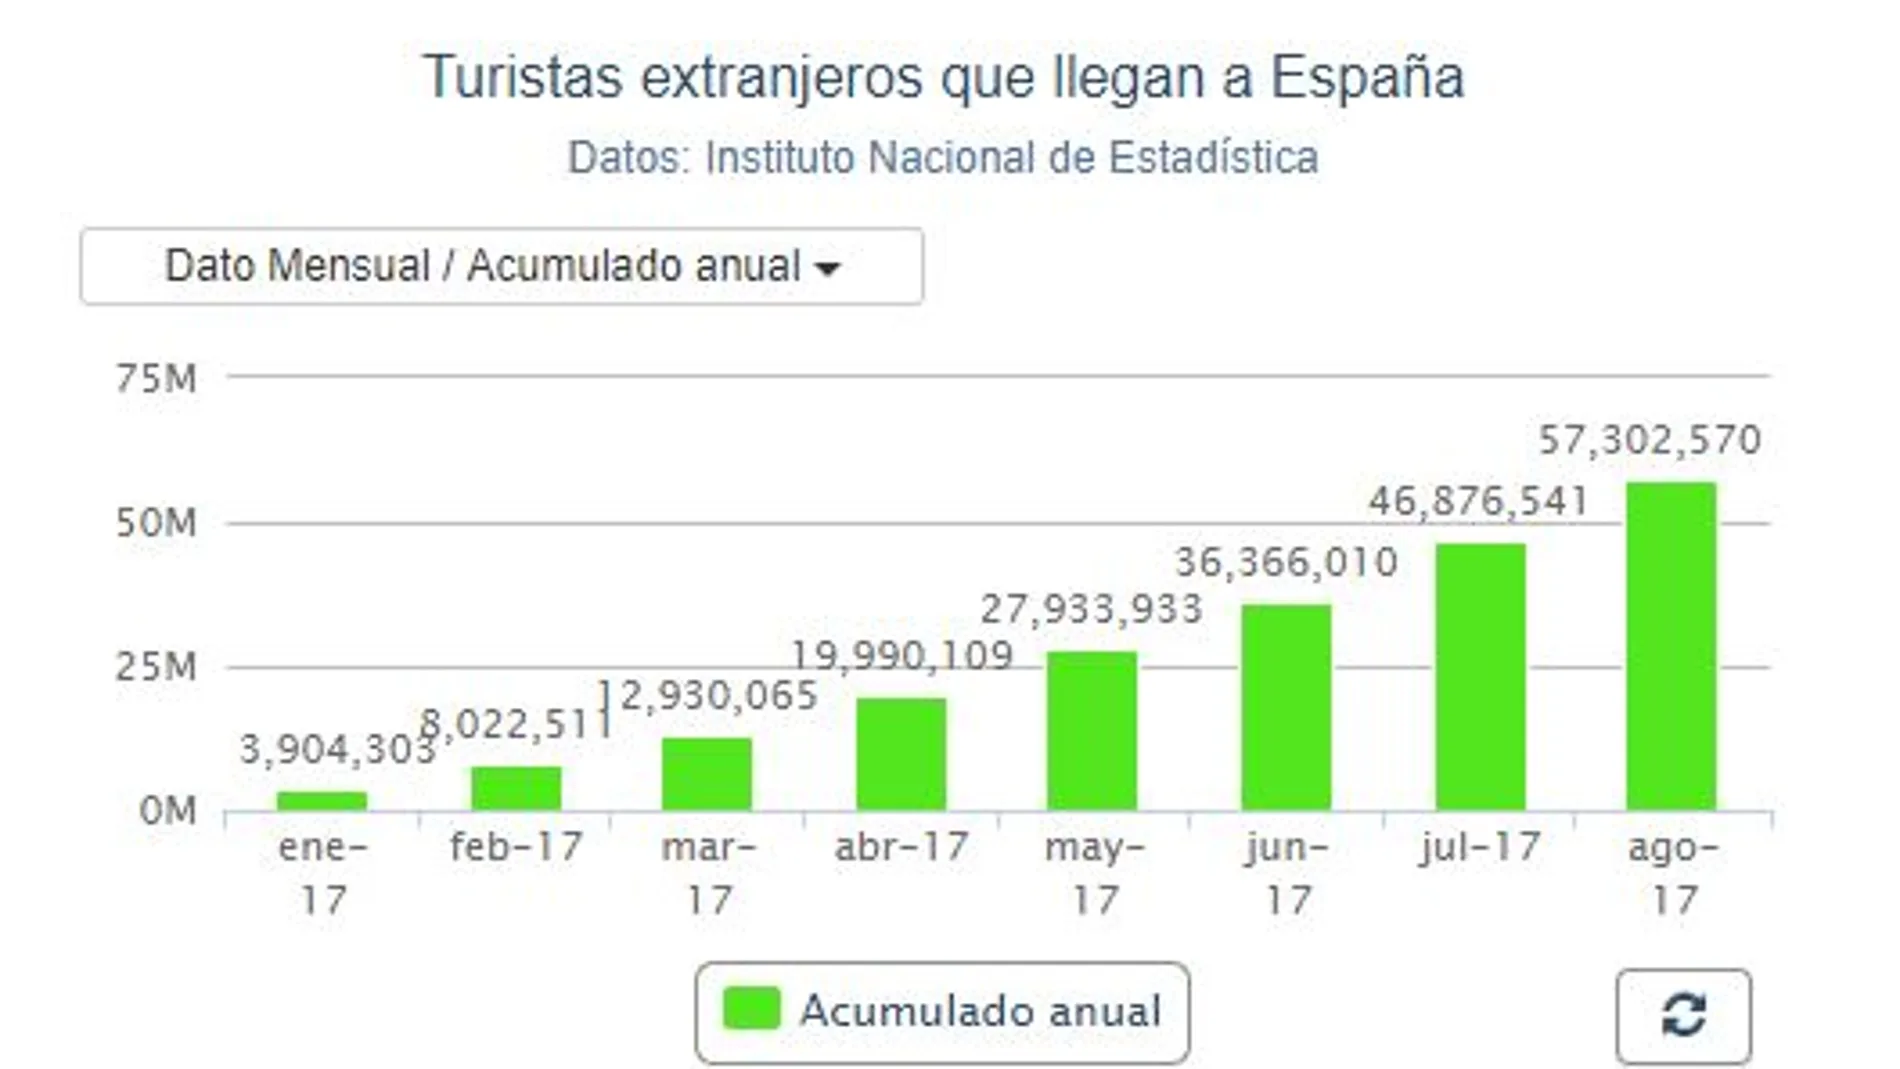 España recibió más de 57 millones de turistas hasta agosto, un 9,9% más